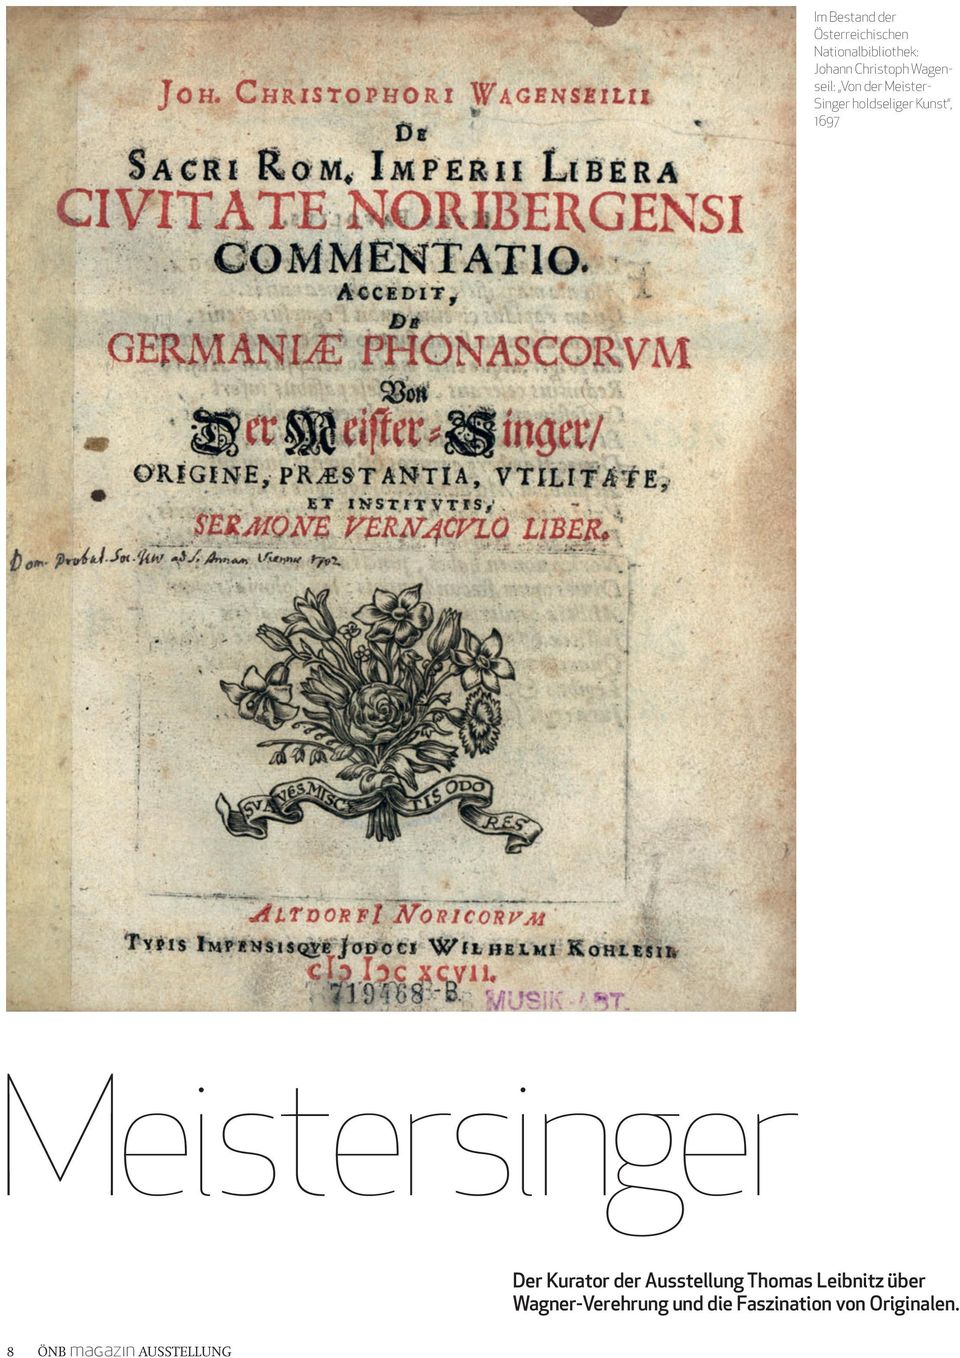 1697 Meistersinger Der Kurator der Ausstellung Thomas Leibnitz über